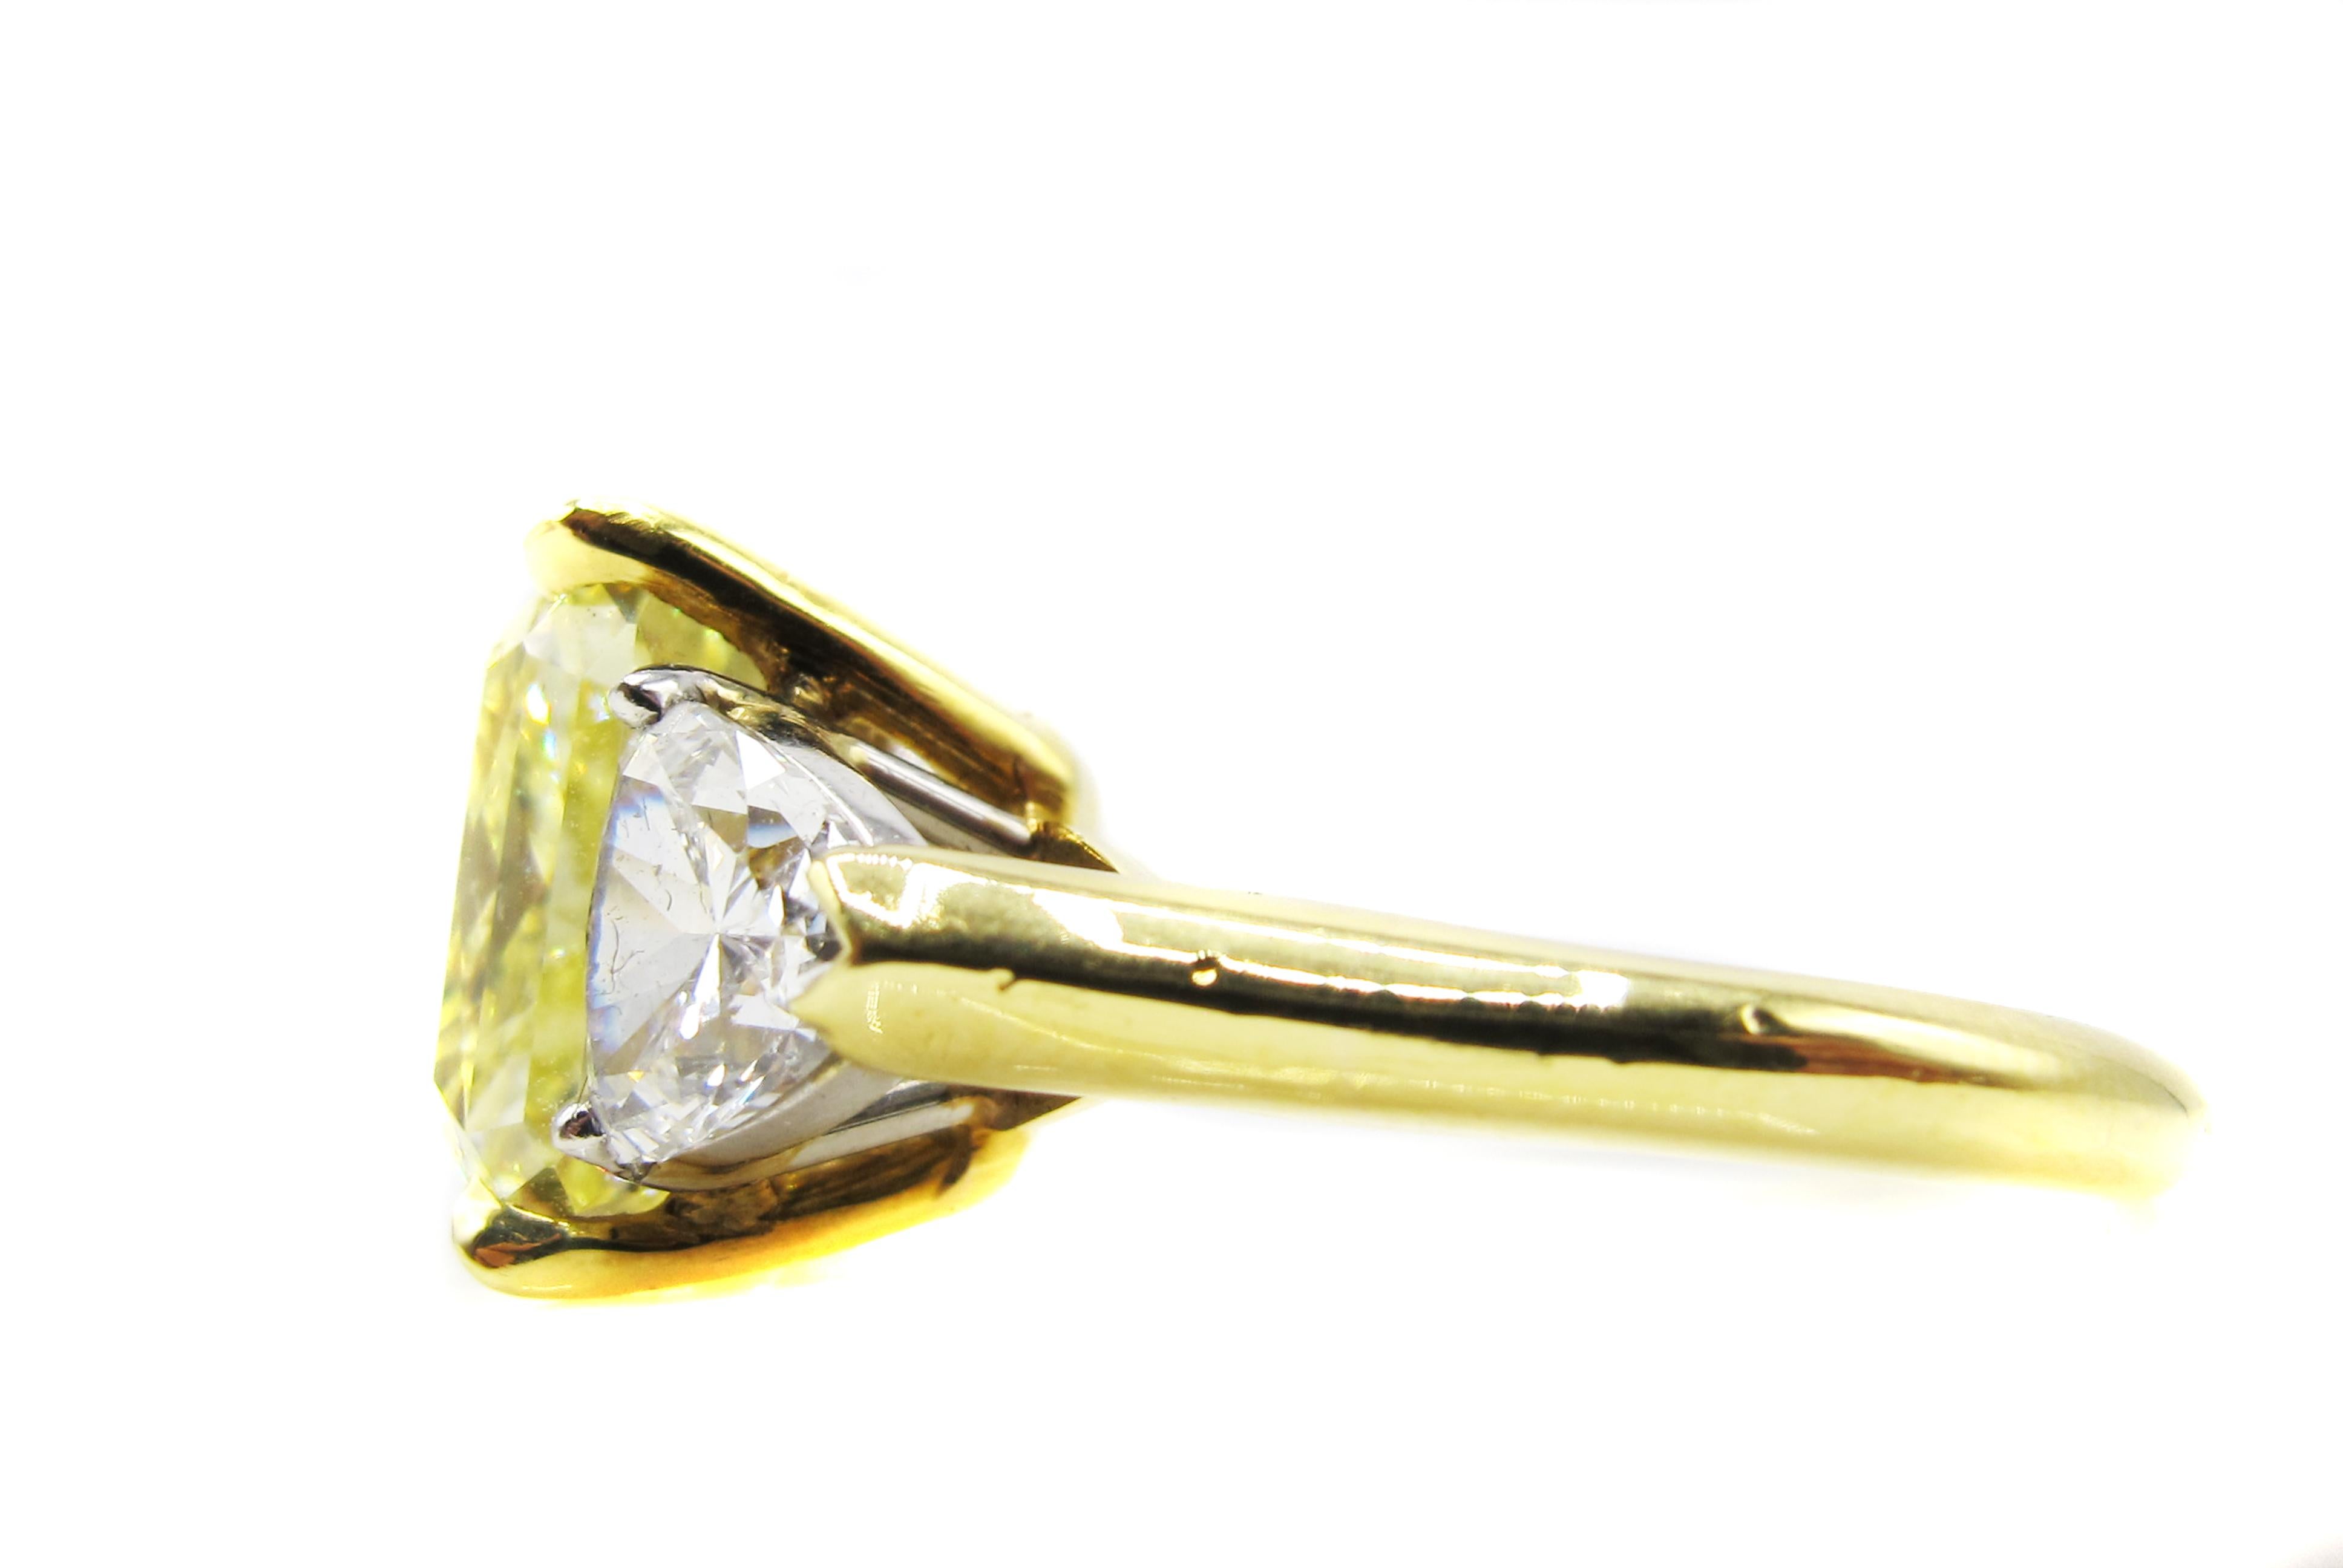 Erstaunlicher zitronengelber natürlicher, intensiv gelber Diamant  Ring in einer handgefertigten Fassung aus 18 Karat Gelbgold und Platin. Der extrem gut geschliffene Radiant hat eine außergewöhnliche Ausdehnung und wirkt größer als Steine gleicher